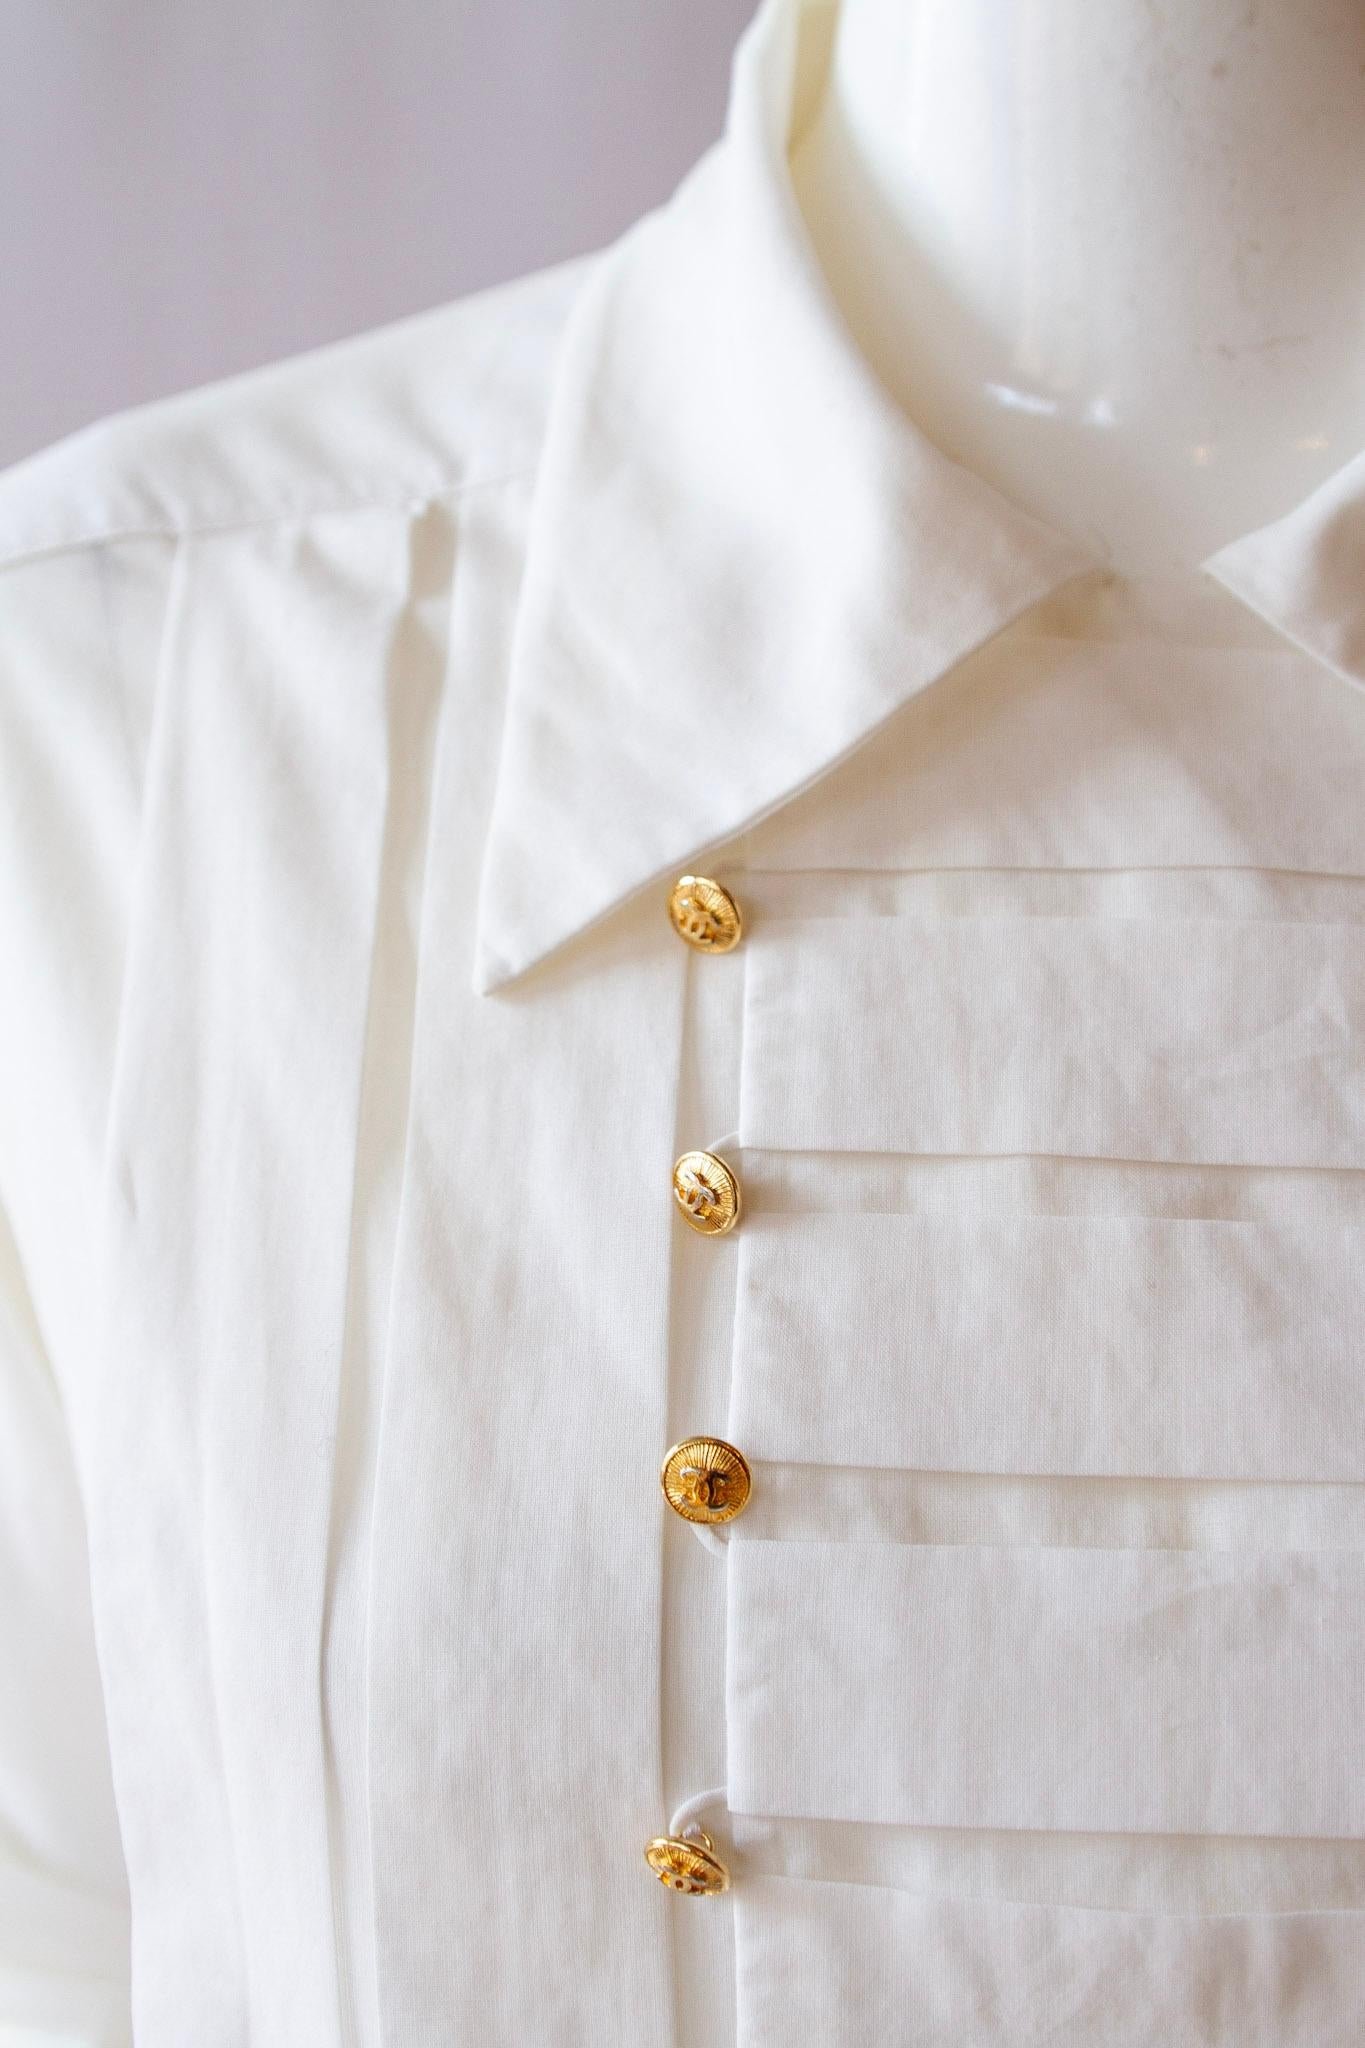 Top à col à manches longues en coton blanc de Chanel, style smoking, avec panneau plissé sur le devant, orné de boutons Chanel dorés.